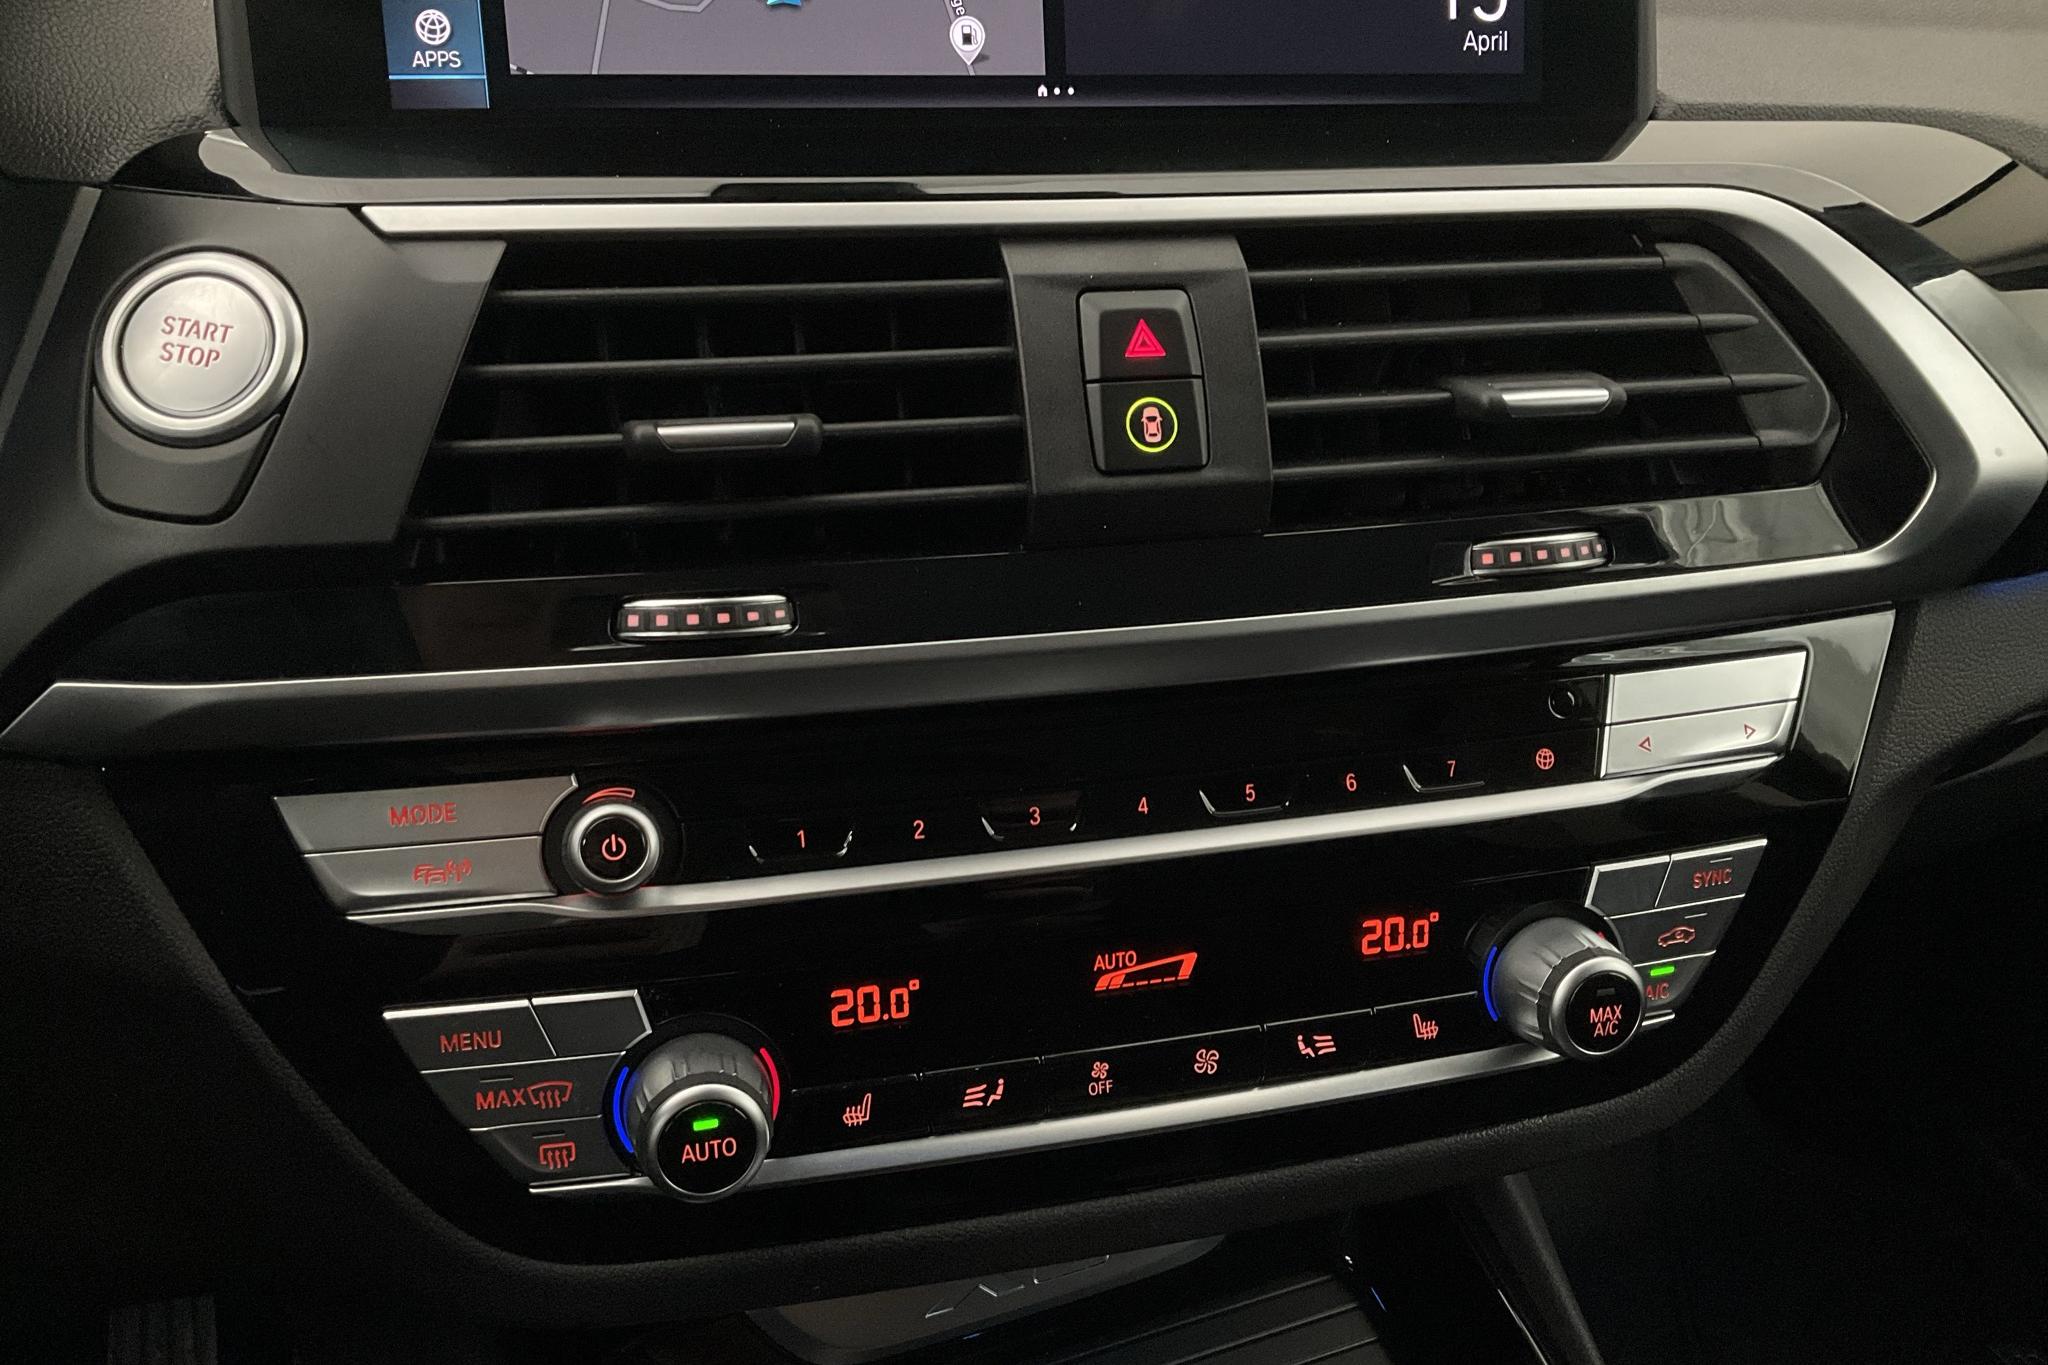 BMW X3 xDrive30e, G01 (292hk) - 65 970 km - Automatyczna - czarny - 2020